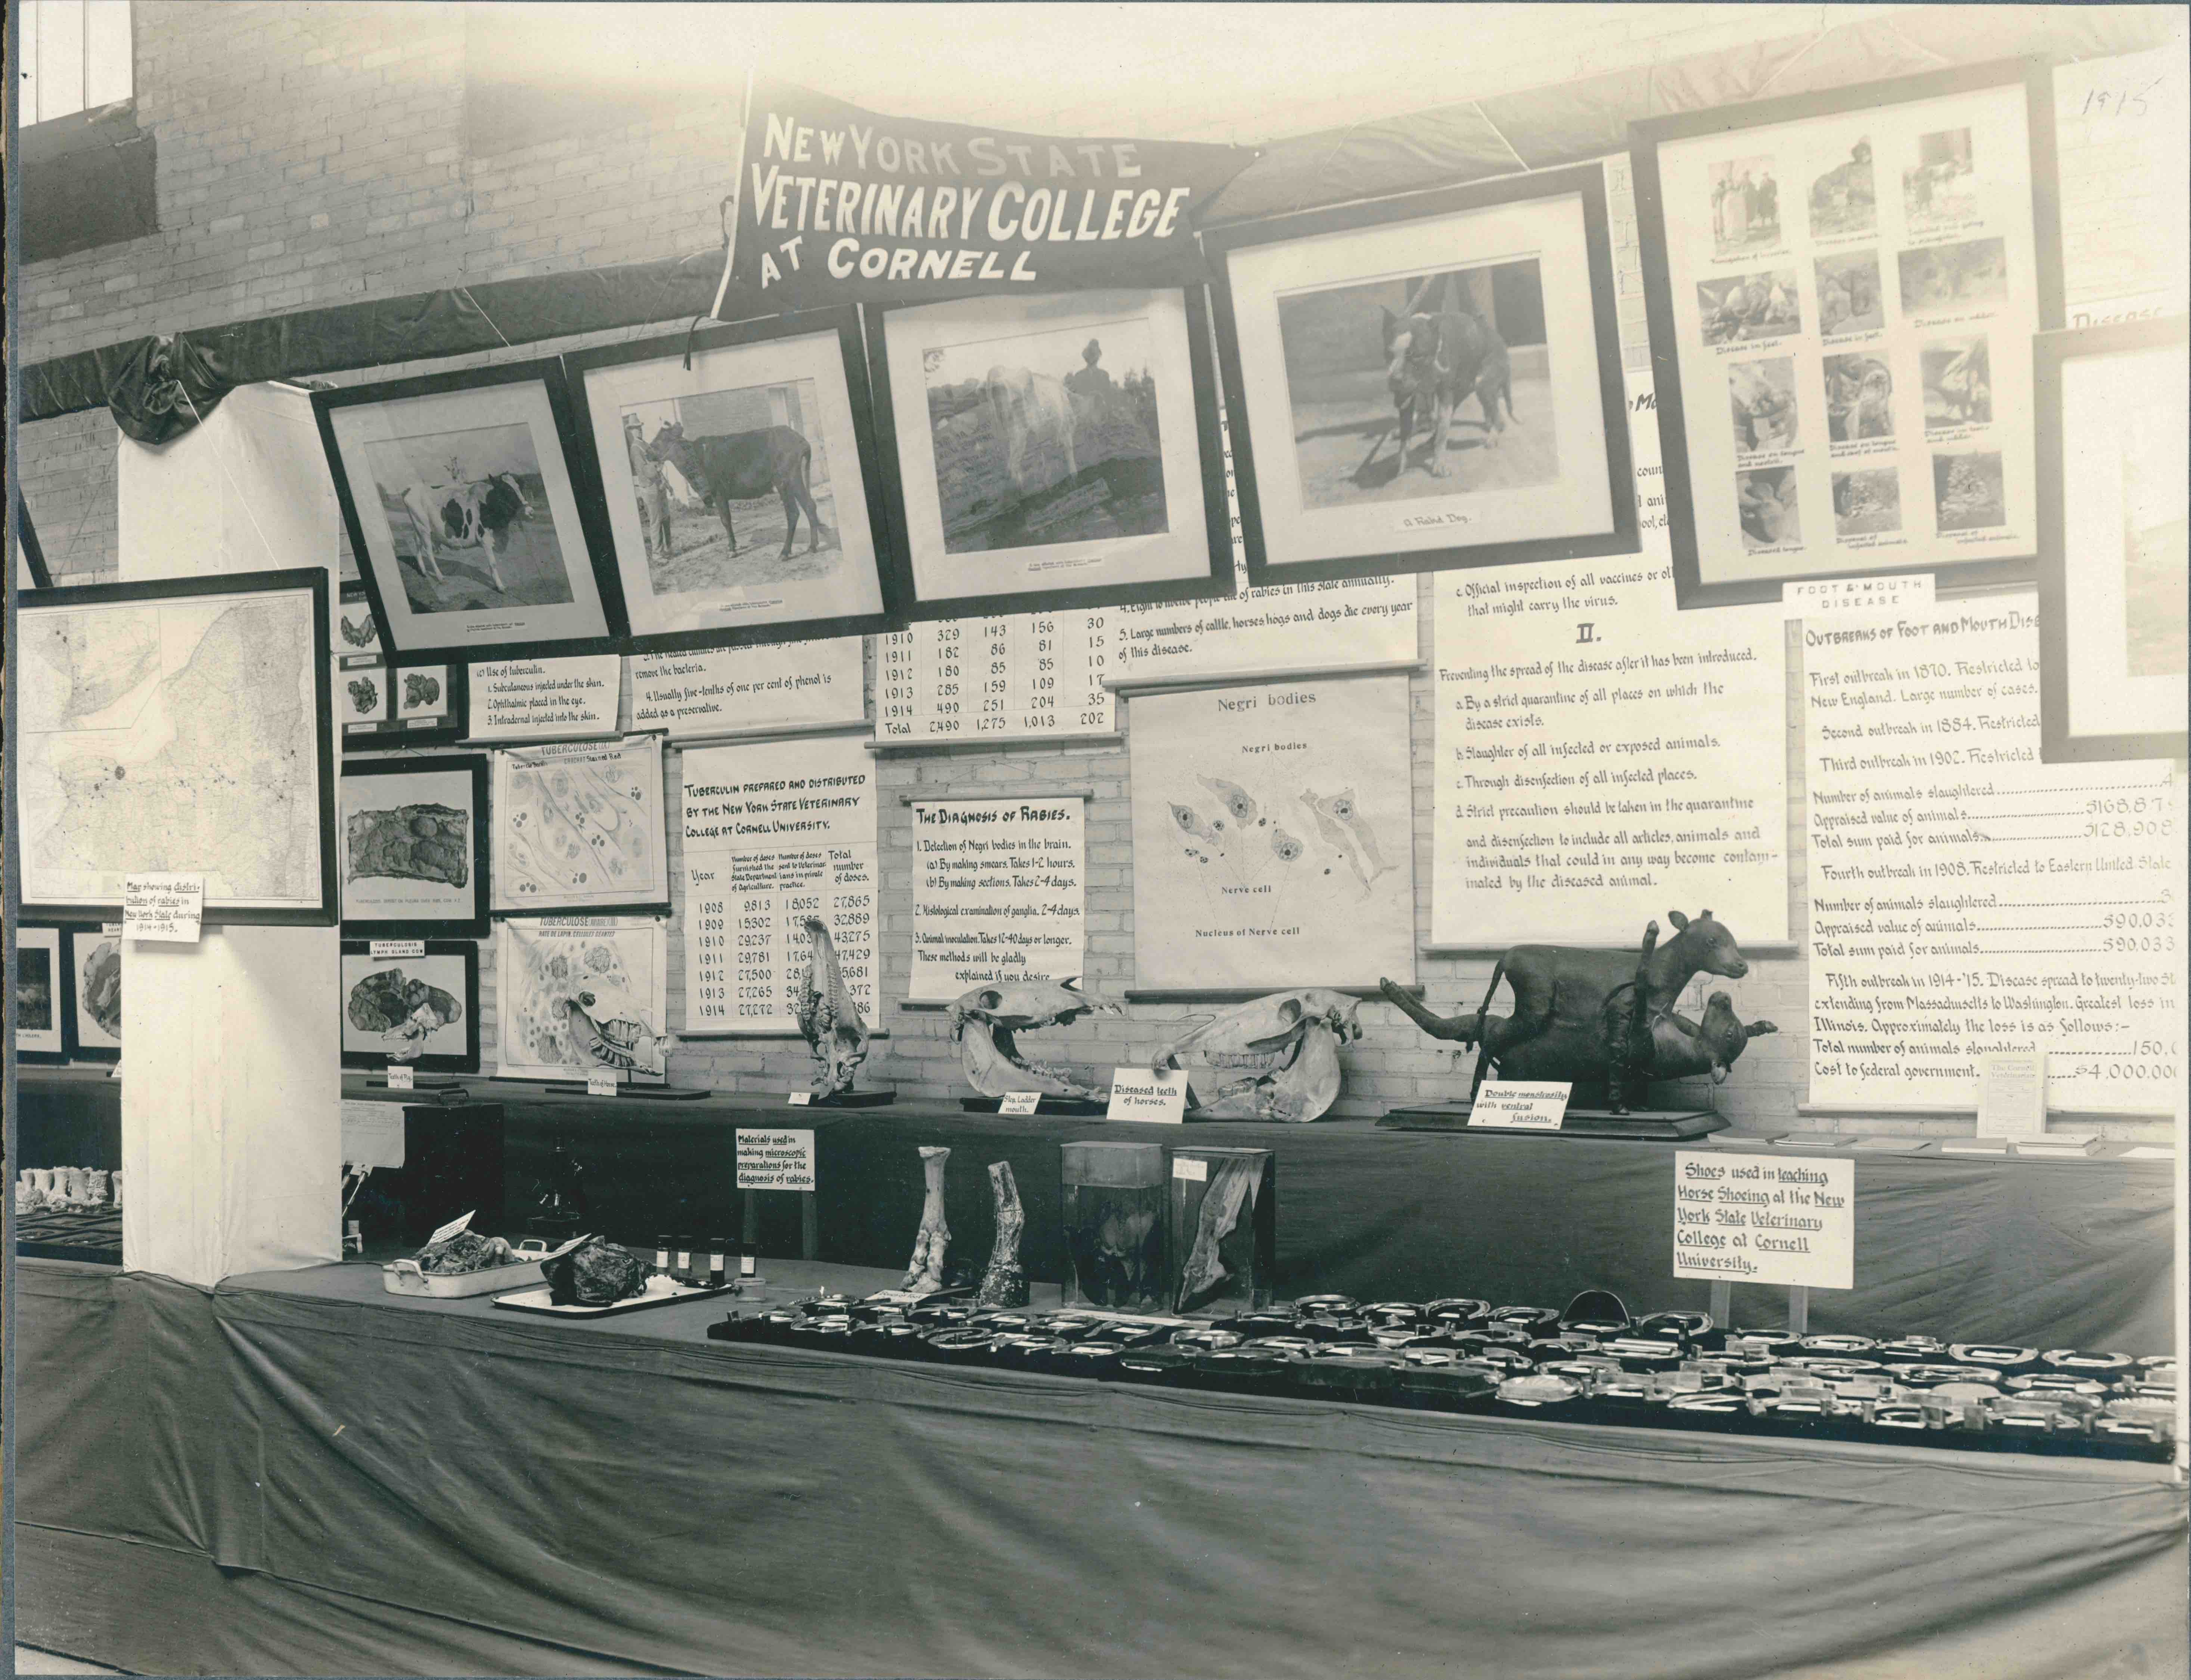 The CVM
exhibit at the 1916 fair.